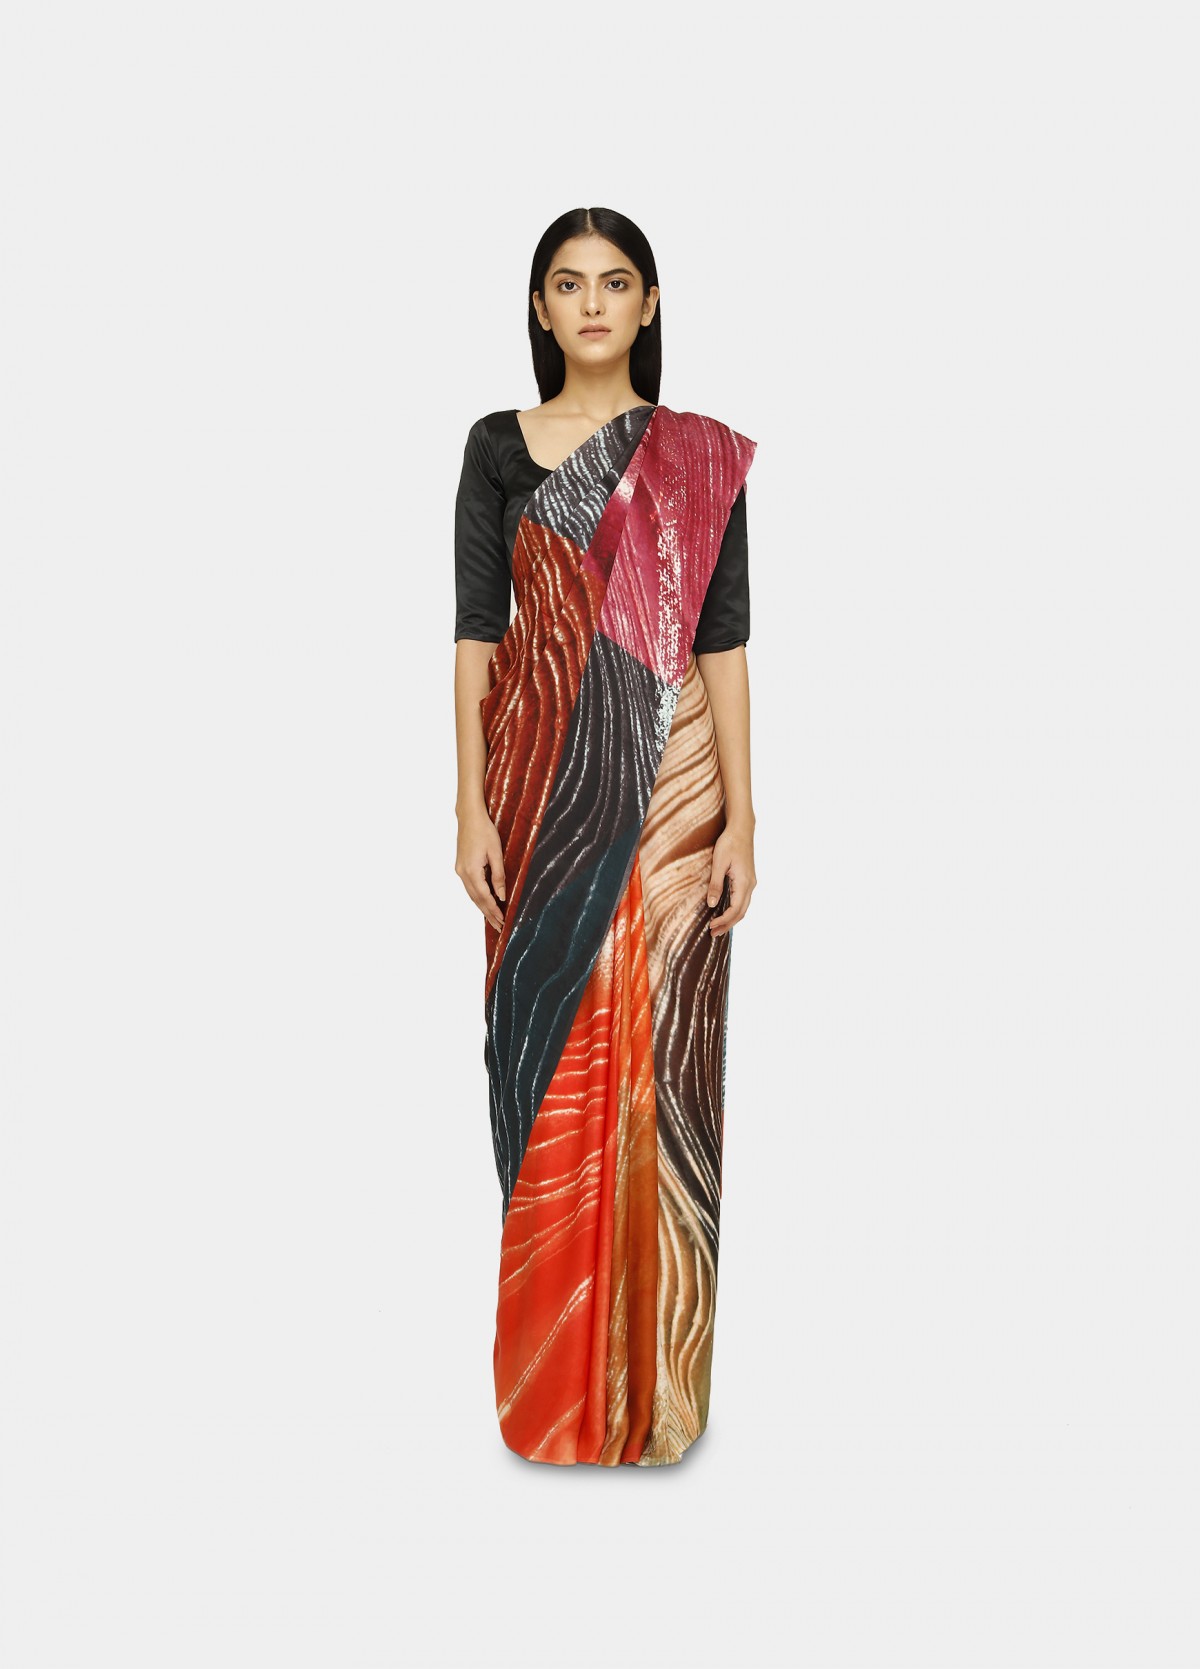 The Glaze Sari